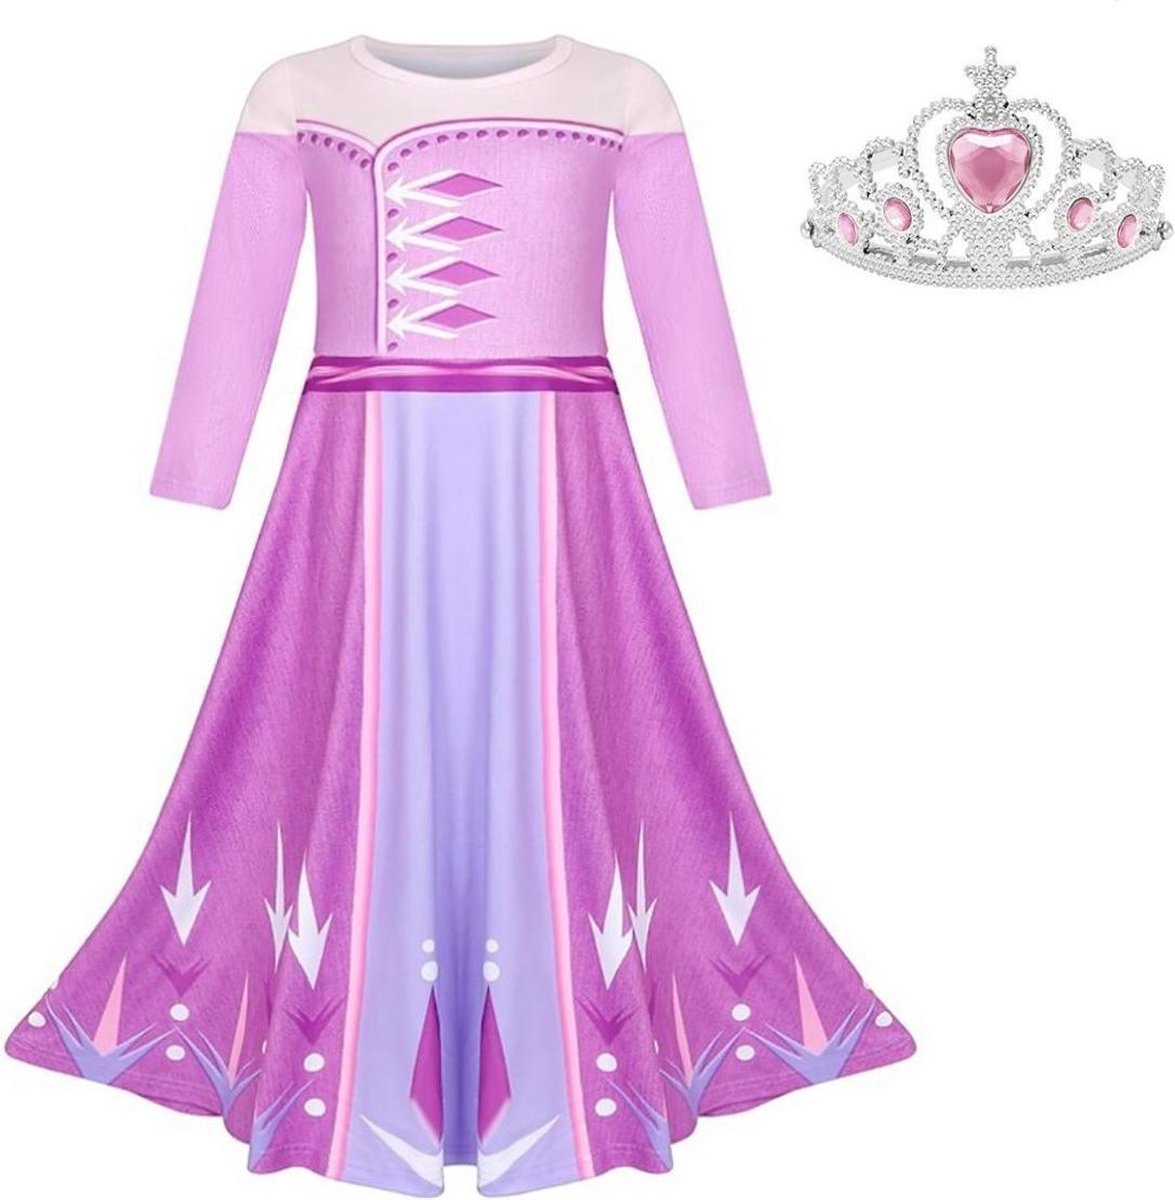 Frozen 2 Elsa jurk paars roze Basic 146-152 (150) + GRATIS kroon Prinsessen jurk verkleedkleding